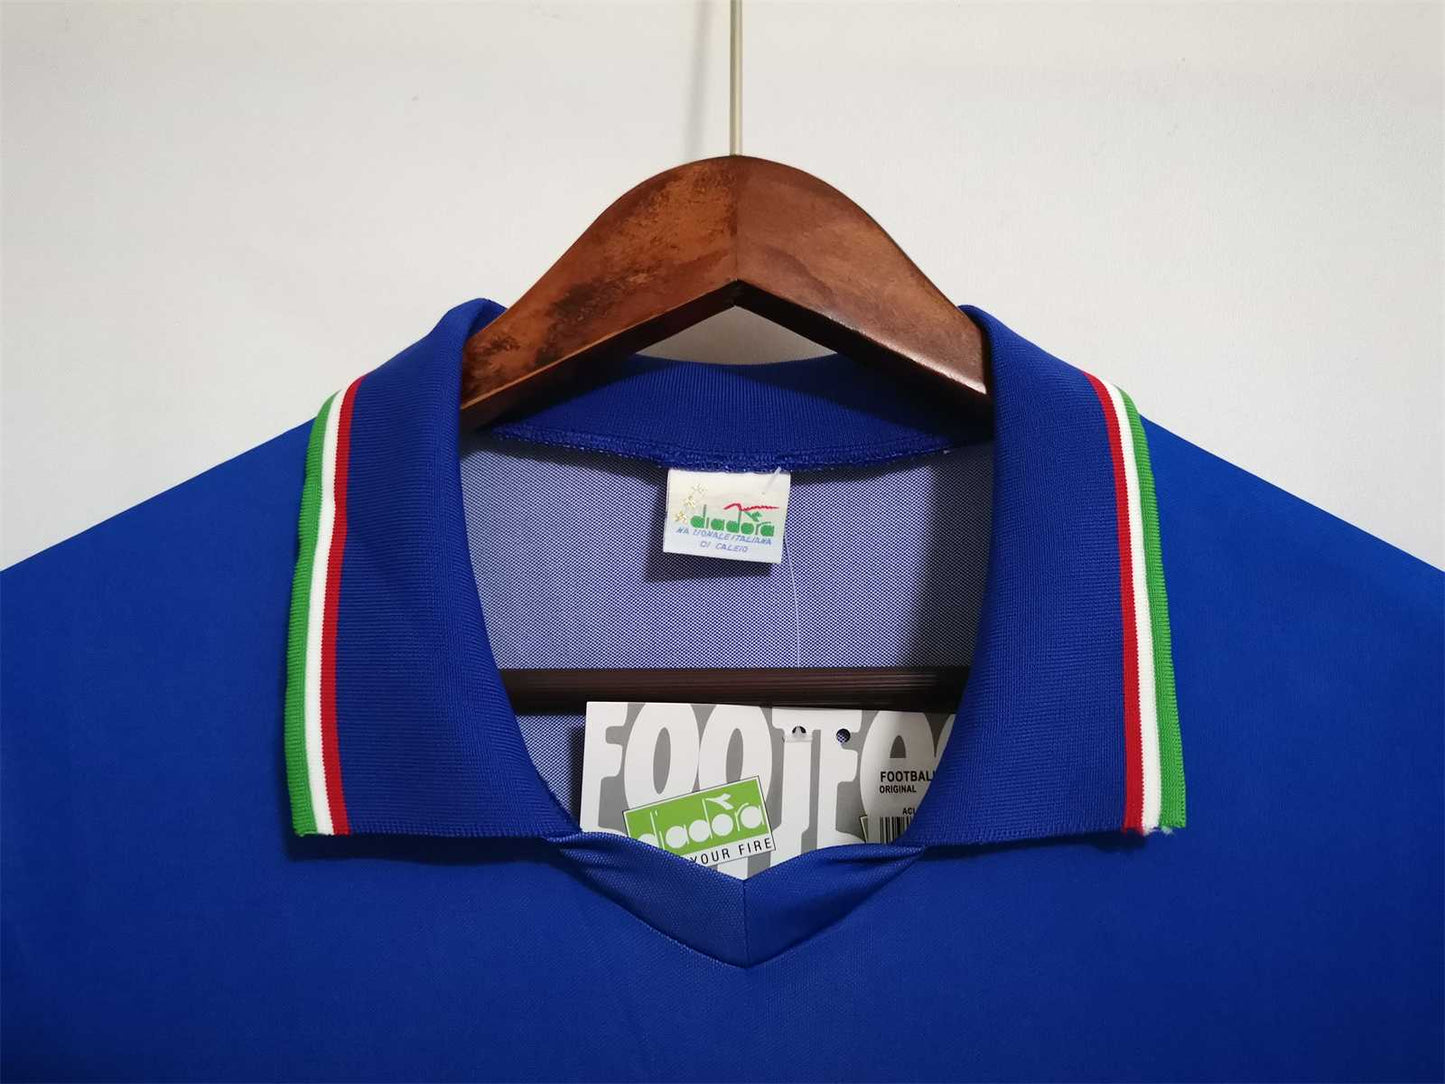 Selección Italia. Camiseta local 1990